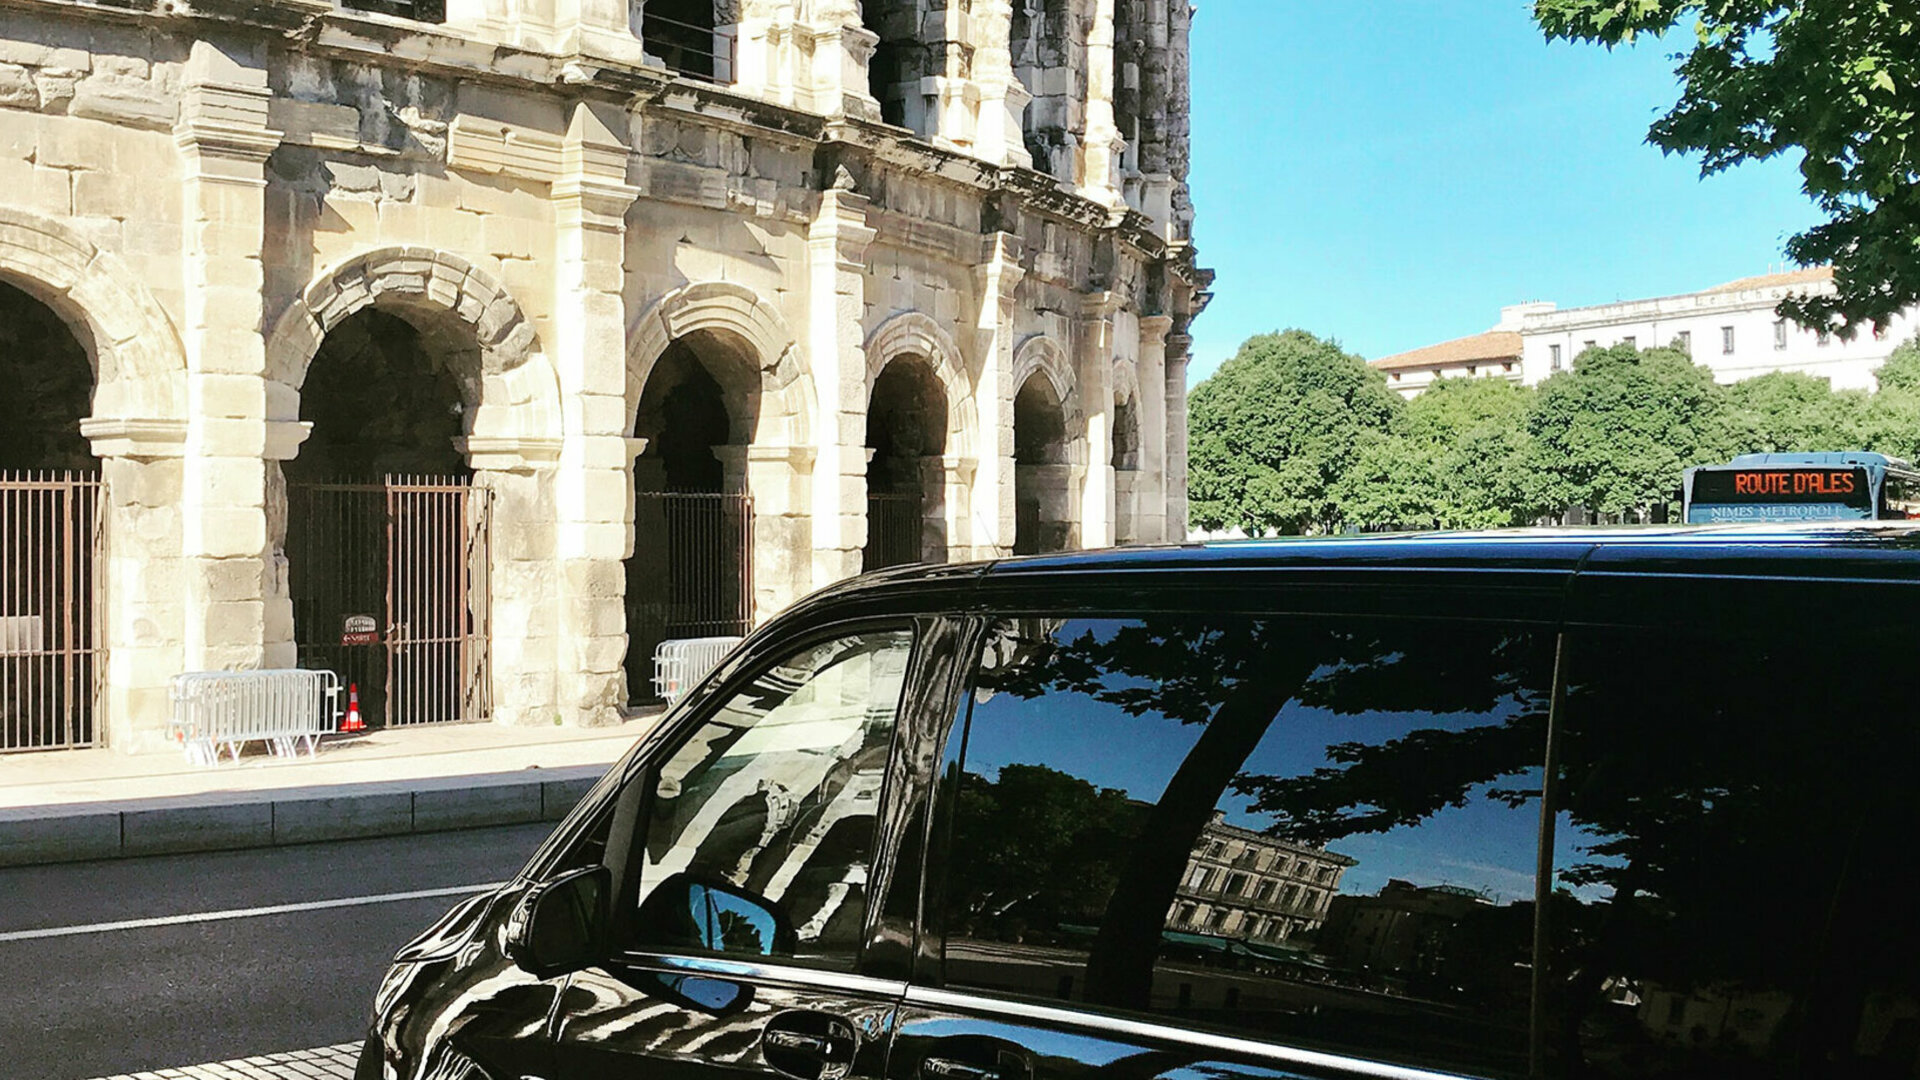 Consultez les avis clients de MYCAB LUXURY VTC chauffeur privé avec voiture de Luxe dans le Gard, Aude, Hérault et Vaucluse